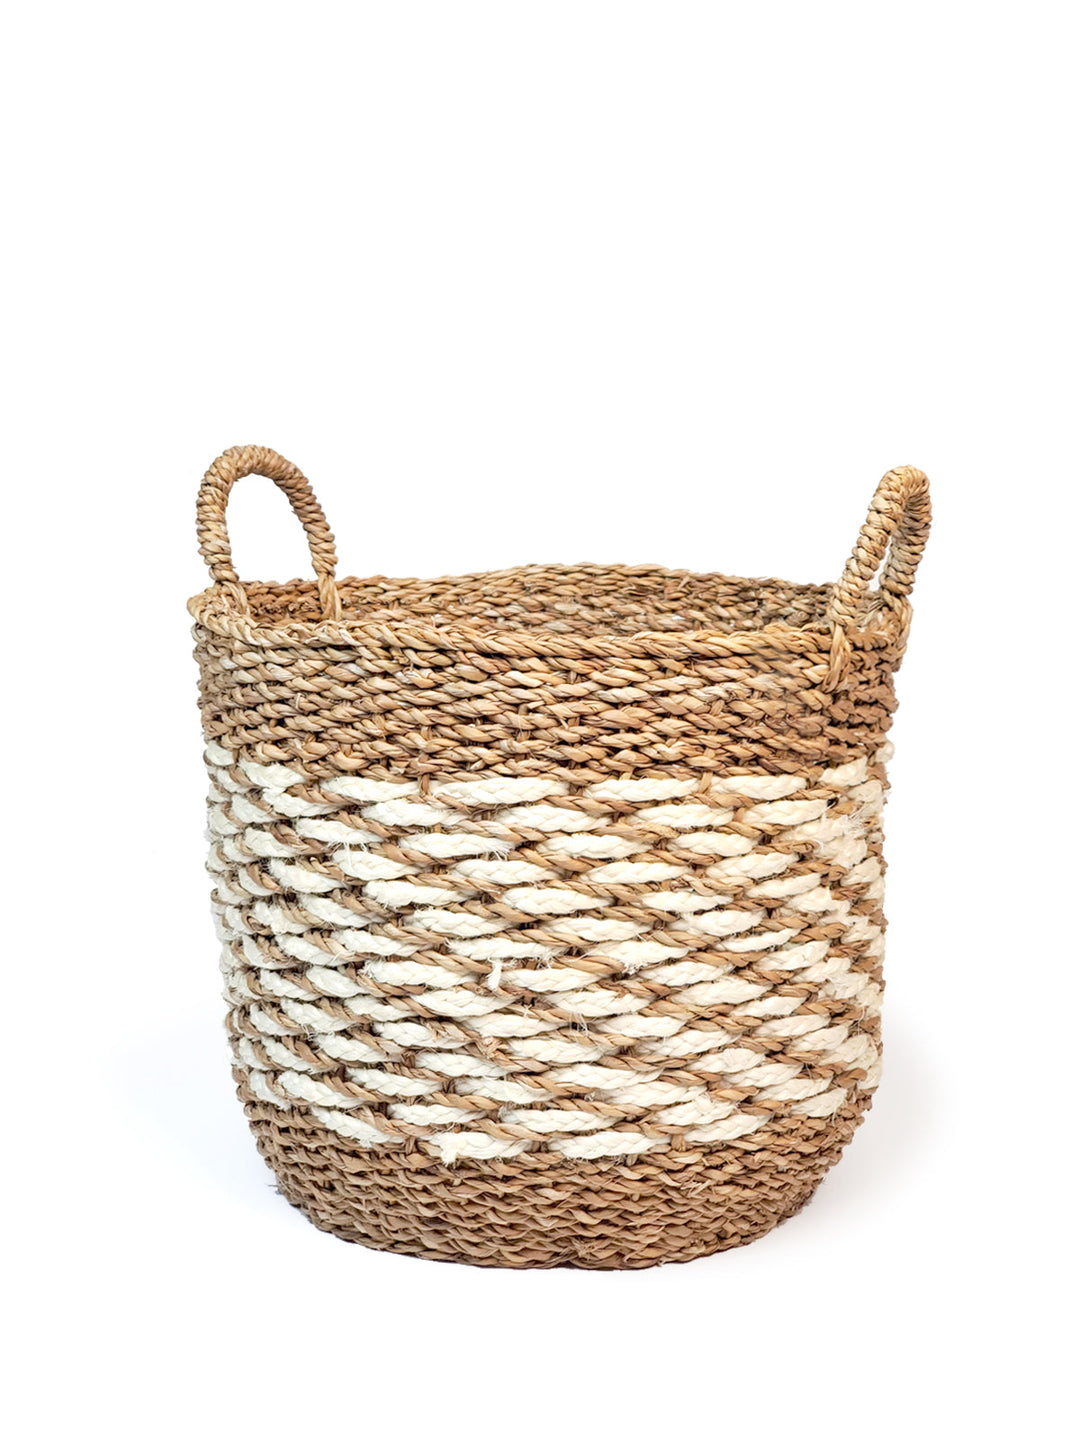 Ula Mesh Basket - Natural Hand Made -7